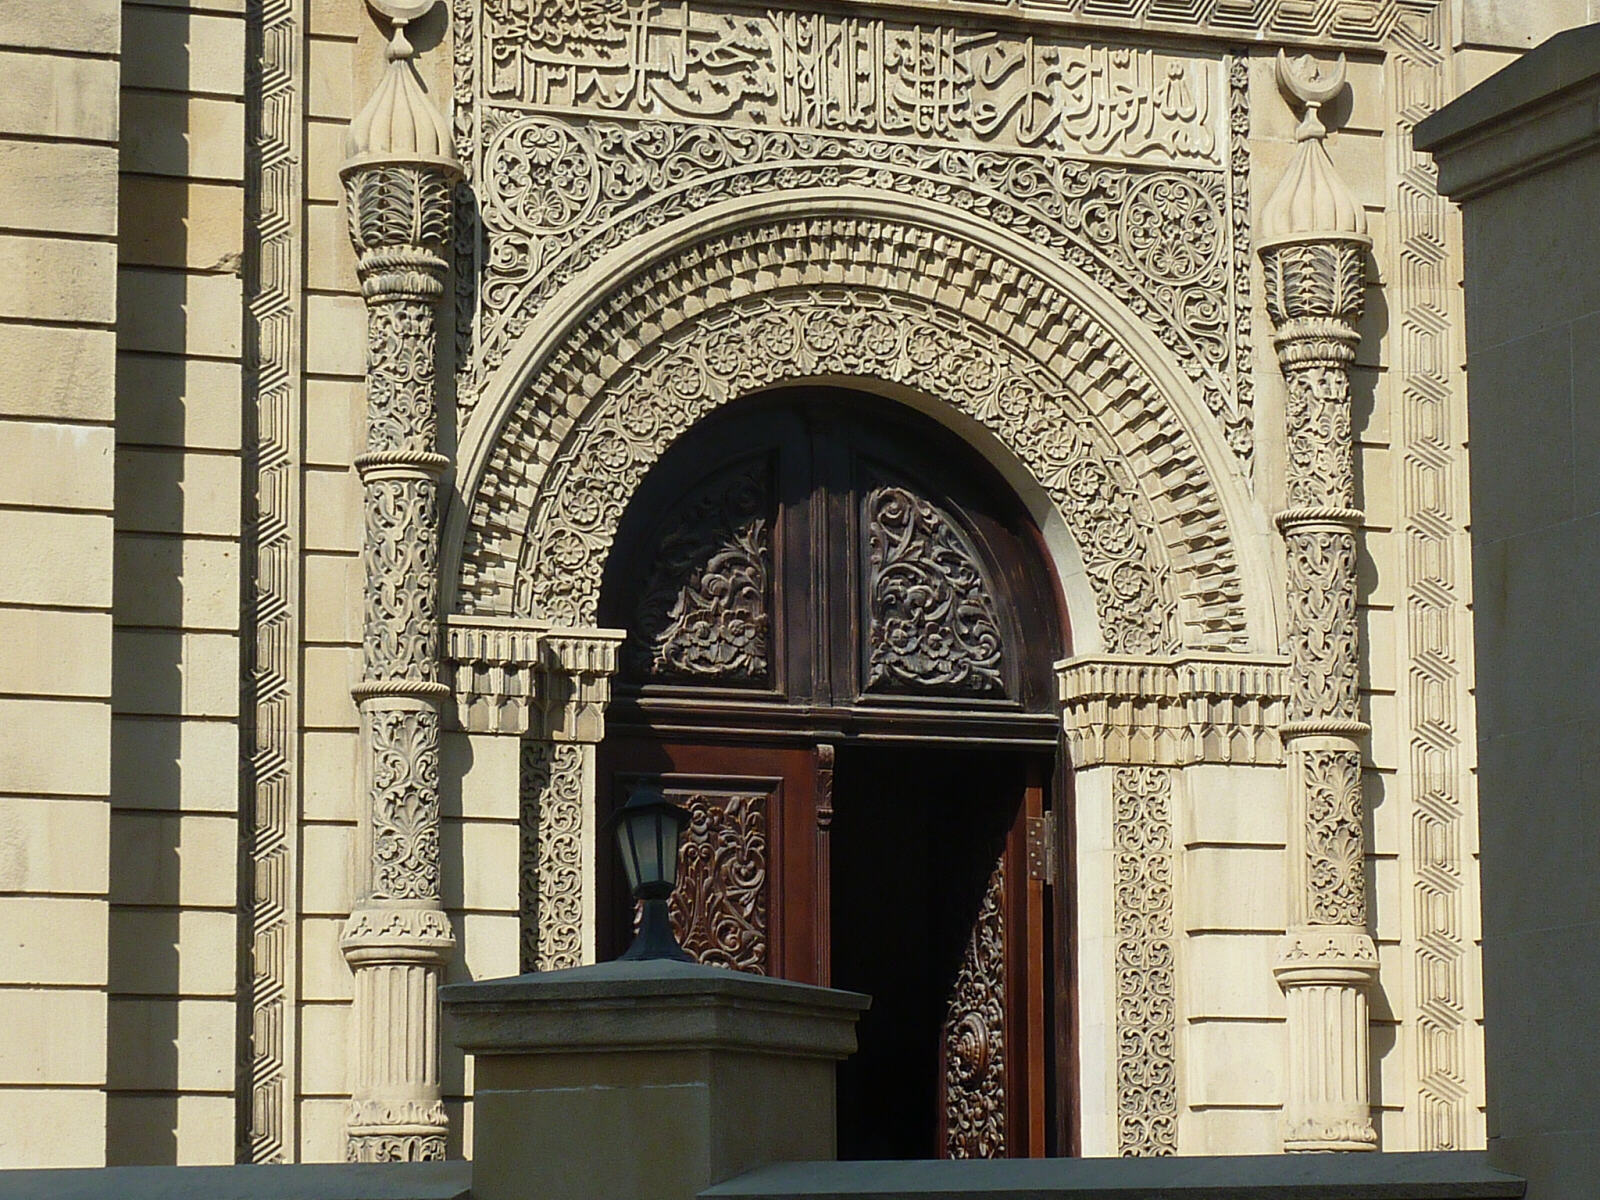 The entrance portal to the Friday Mosque in Baku, Azerbaijan